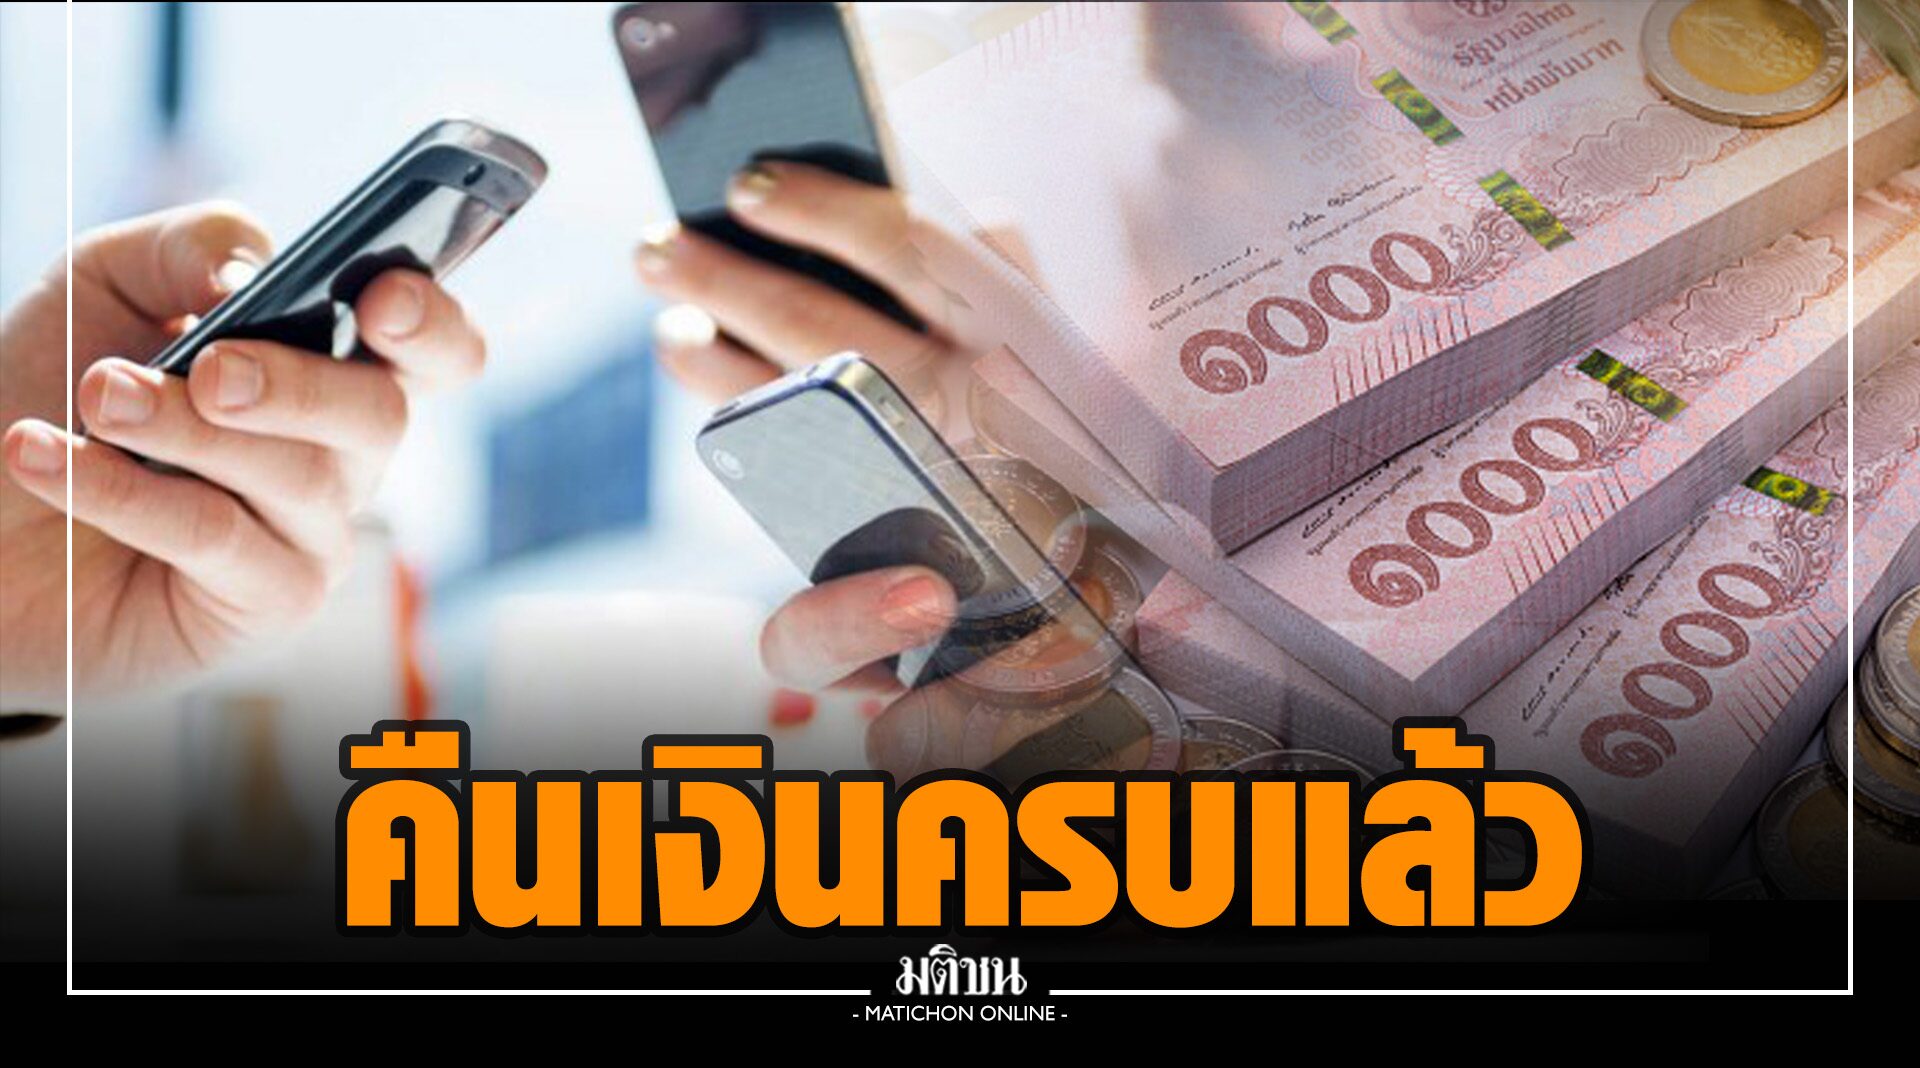 แบงก์ชาติ-ส.ธนาคารไทย แถลงคืนเงินเข้าบัญชีบัตรเดบิตครบหมดแล้ว